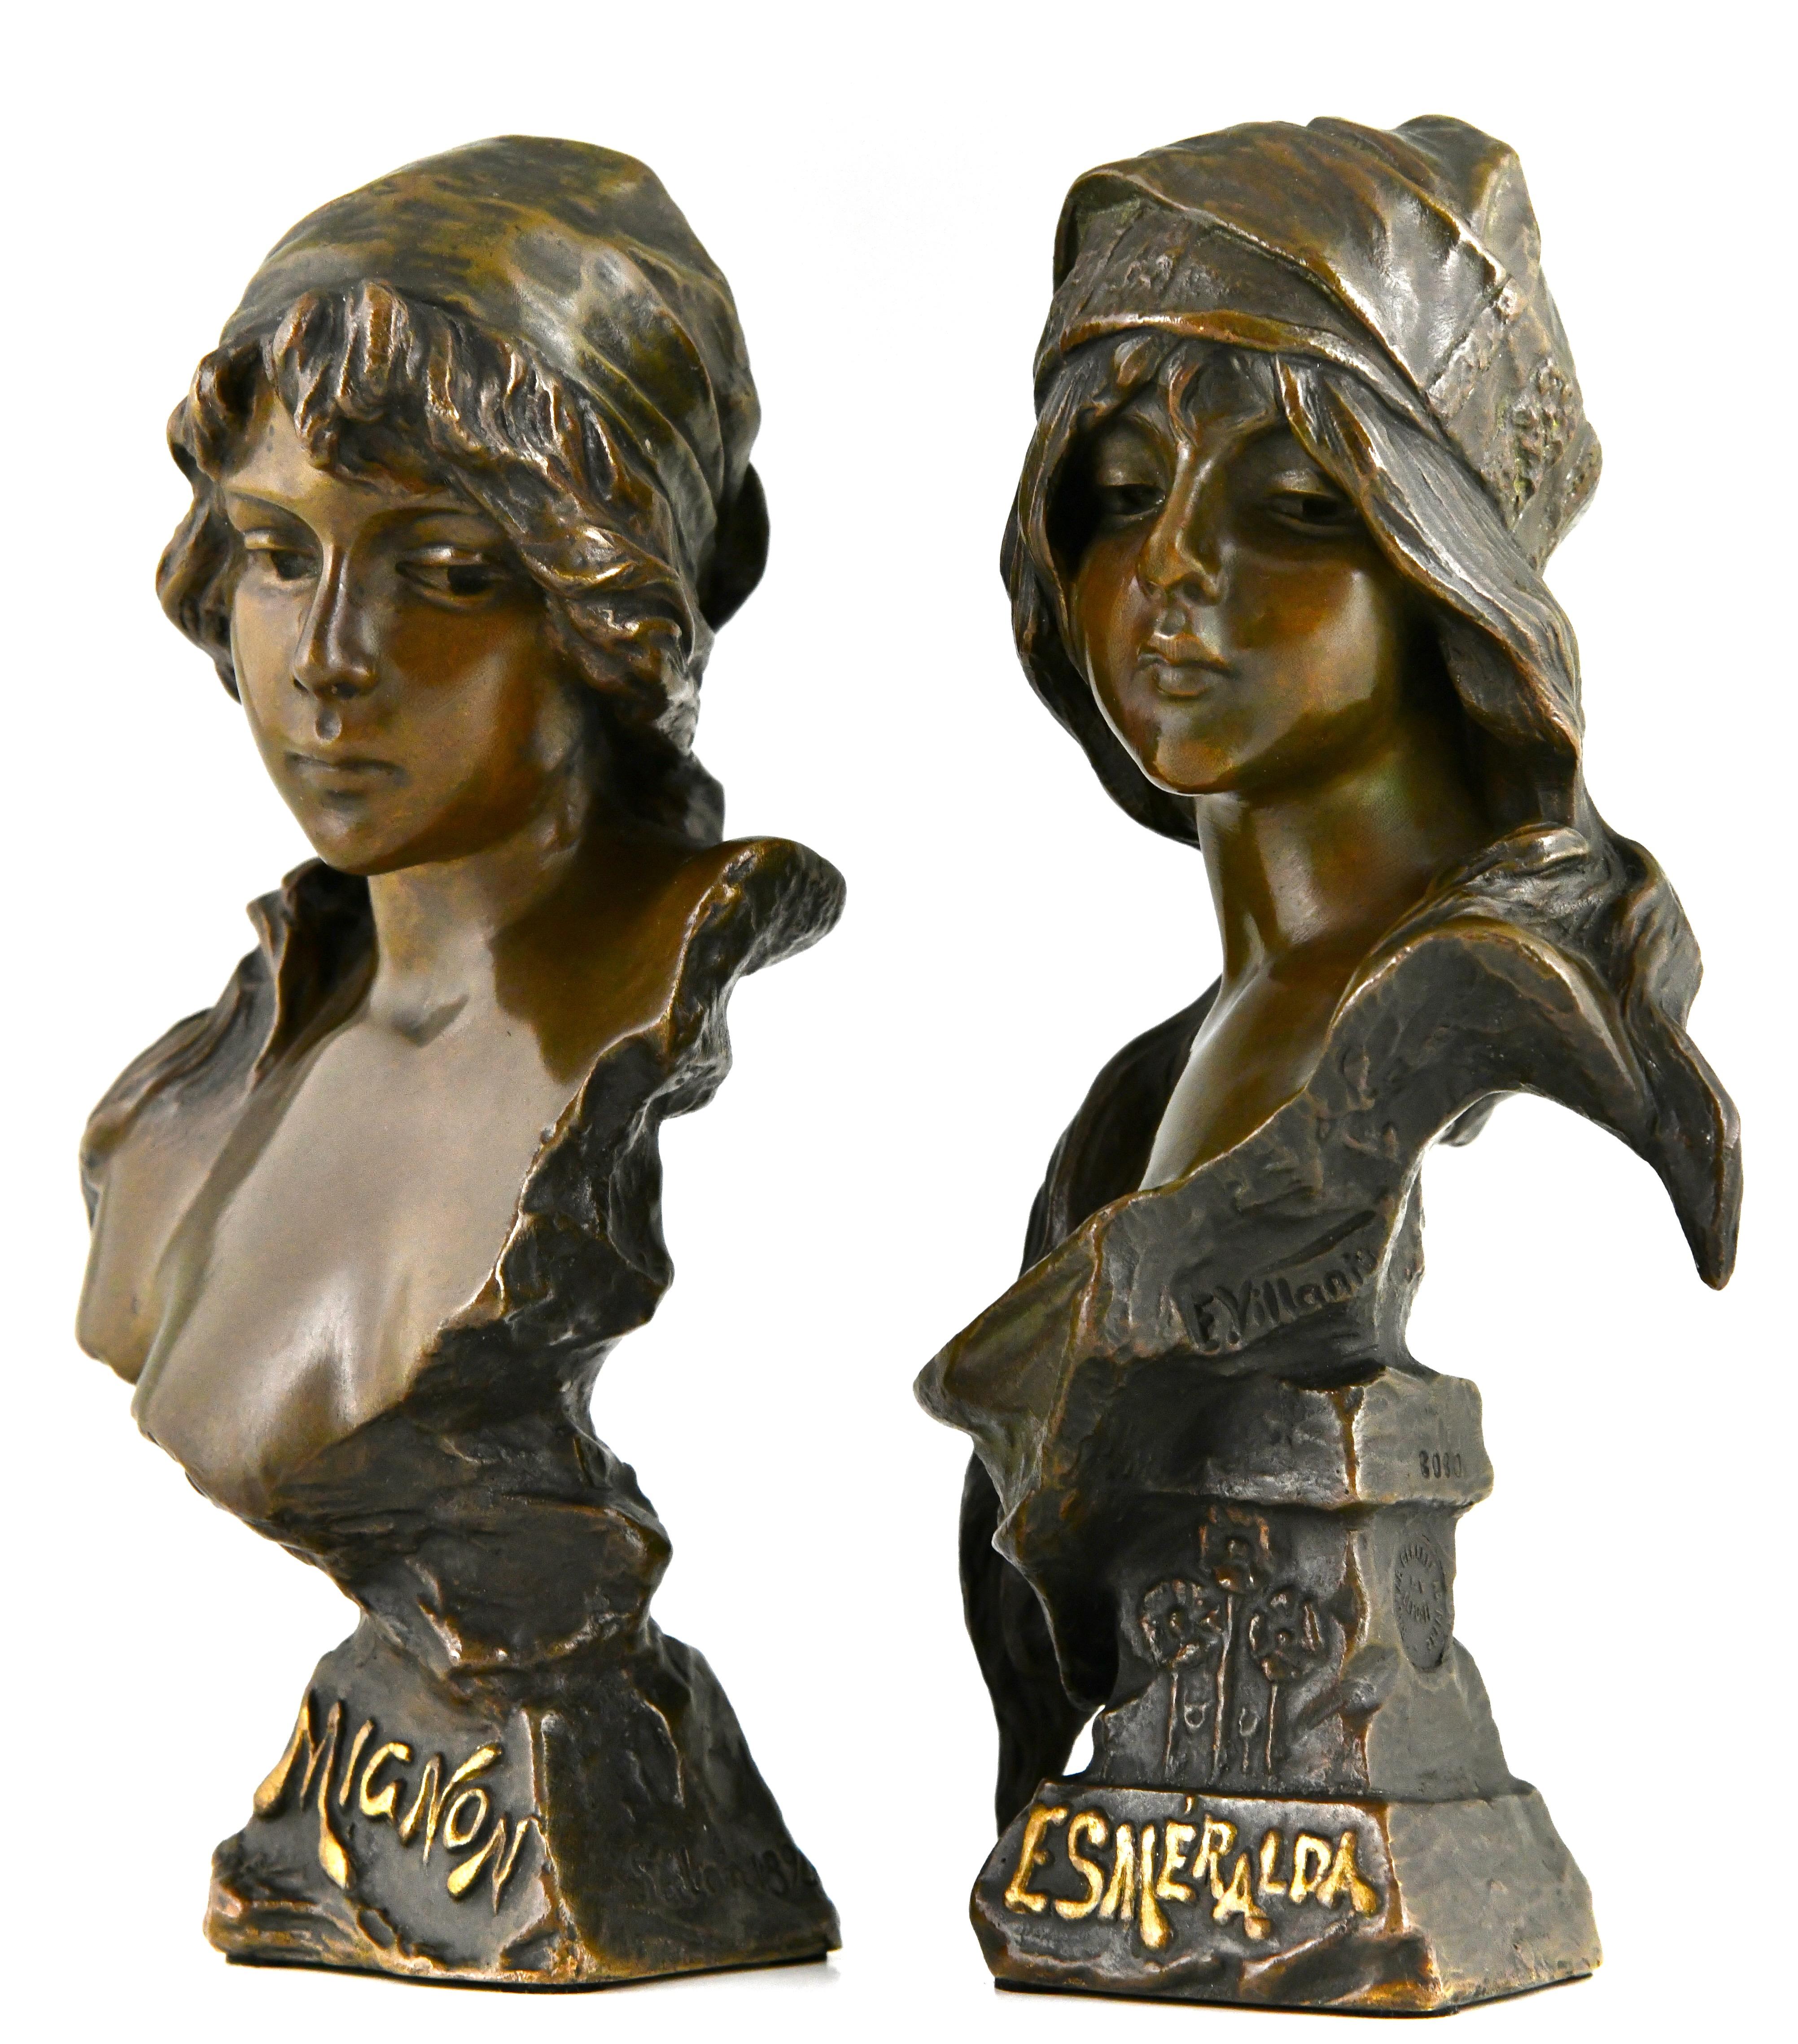 Paire de bustes en bronze Art Nouveau d'une jeune femme Mignon et Esmeralda par Emmanuel Villanis. 
Tous deux présentent une belle patine et une marque de fonderie.
France 1896.  
Mignon :
E. Villanis, initiales du fondateur LU, numérotées. 
Exposé